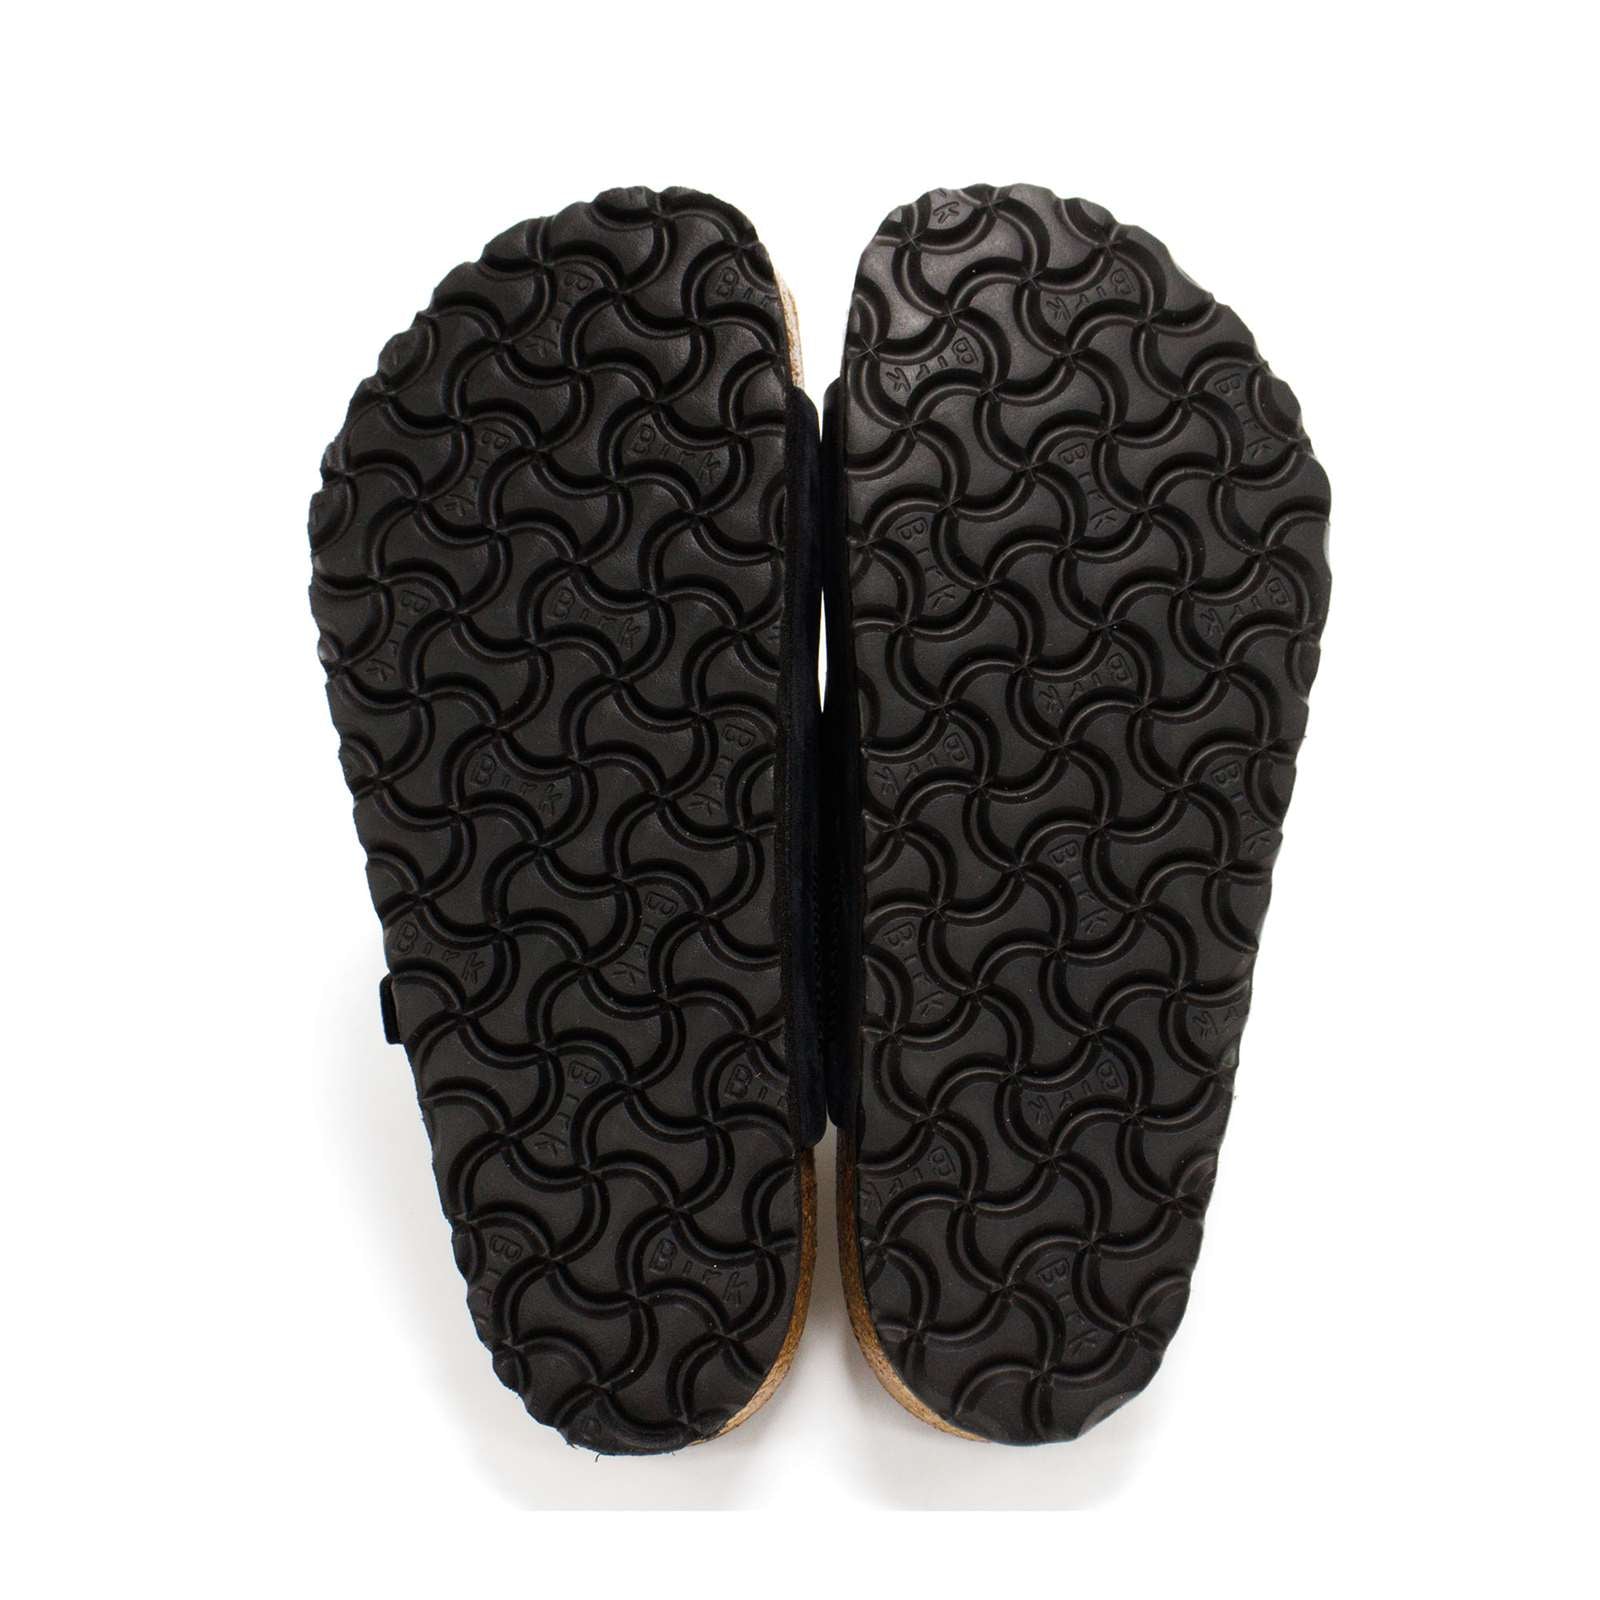 Birkenstock Men Florida Soft Footbed Sandals